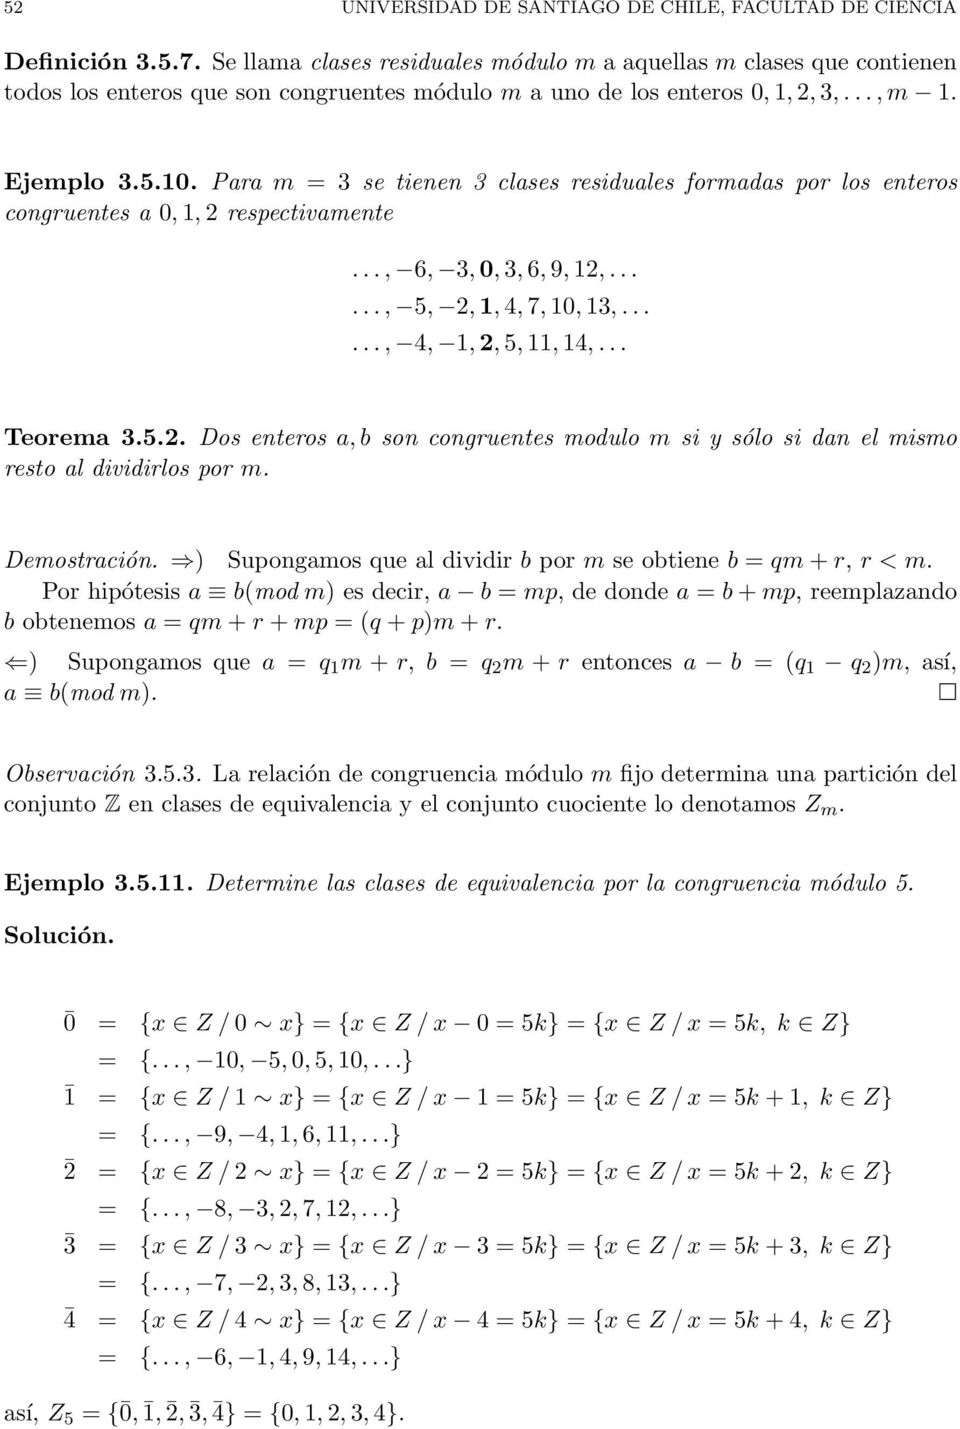 Para m = 3 se tienen 3 clases residuales formadas por los enteros congruentes a 0, 1, 2 respectivamente..., 6, 3, 0, 3, 6, 9, 12,......, 5, 2, 1, 4, 7, 10, 13,......, 4, 1, 2, 5, 11, 14,... Teorema 3.